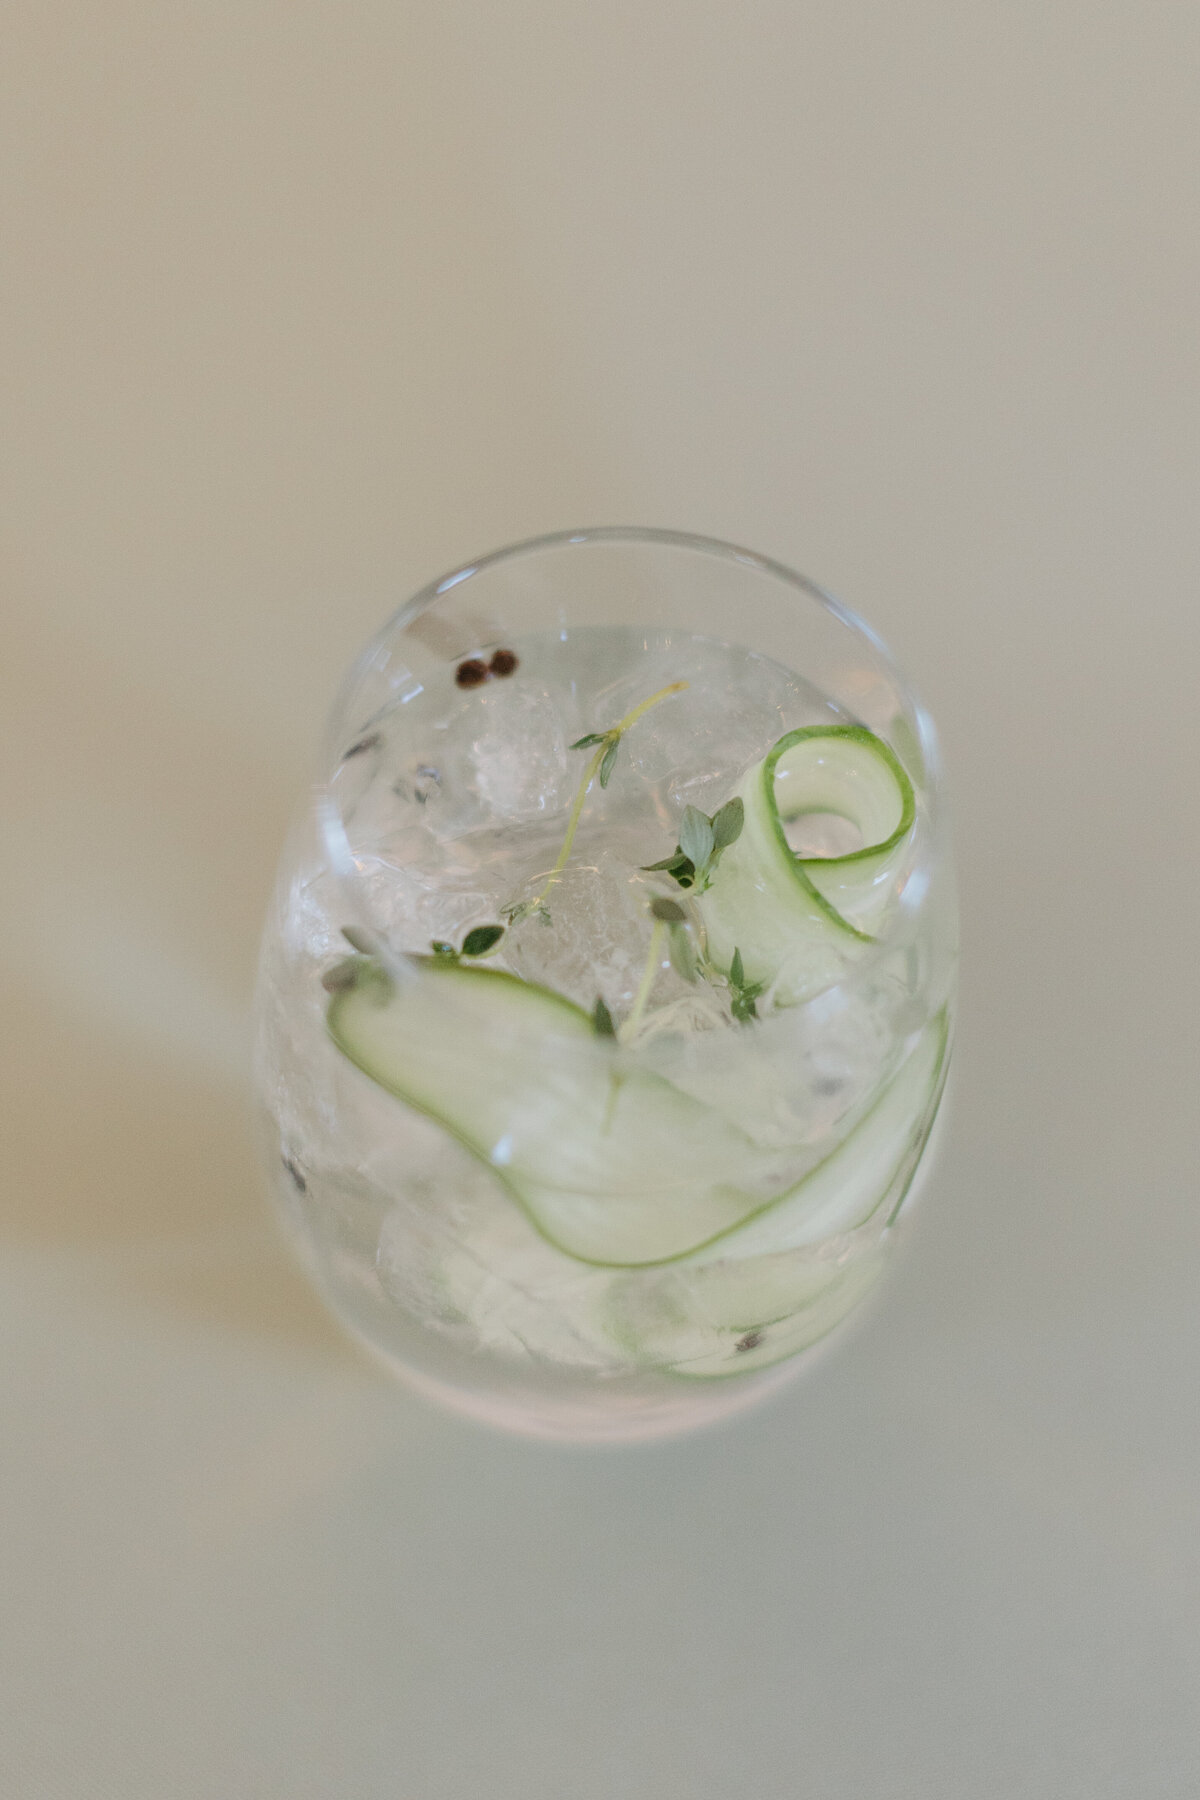 cucumber cocktail